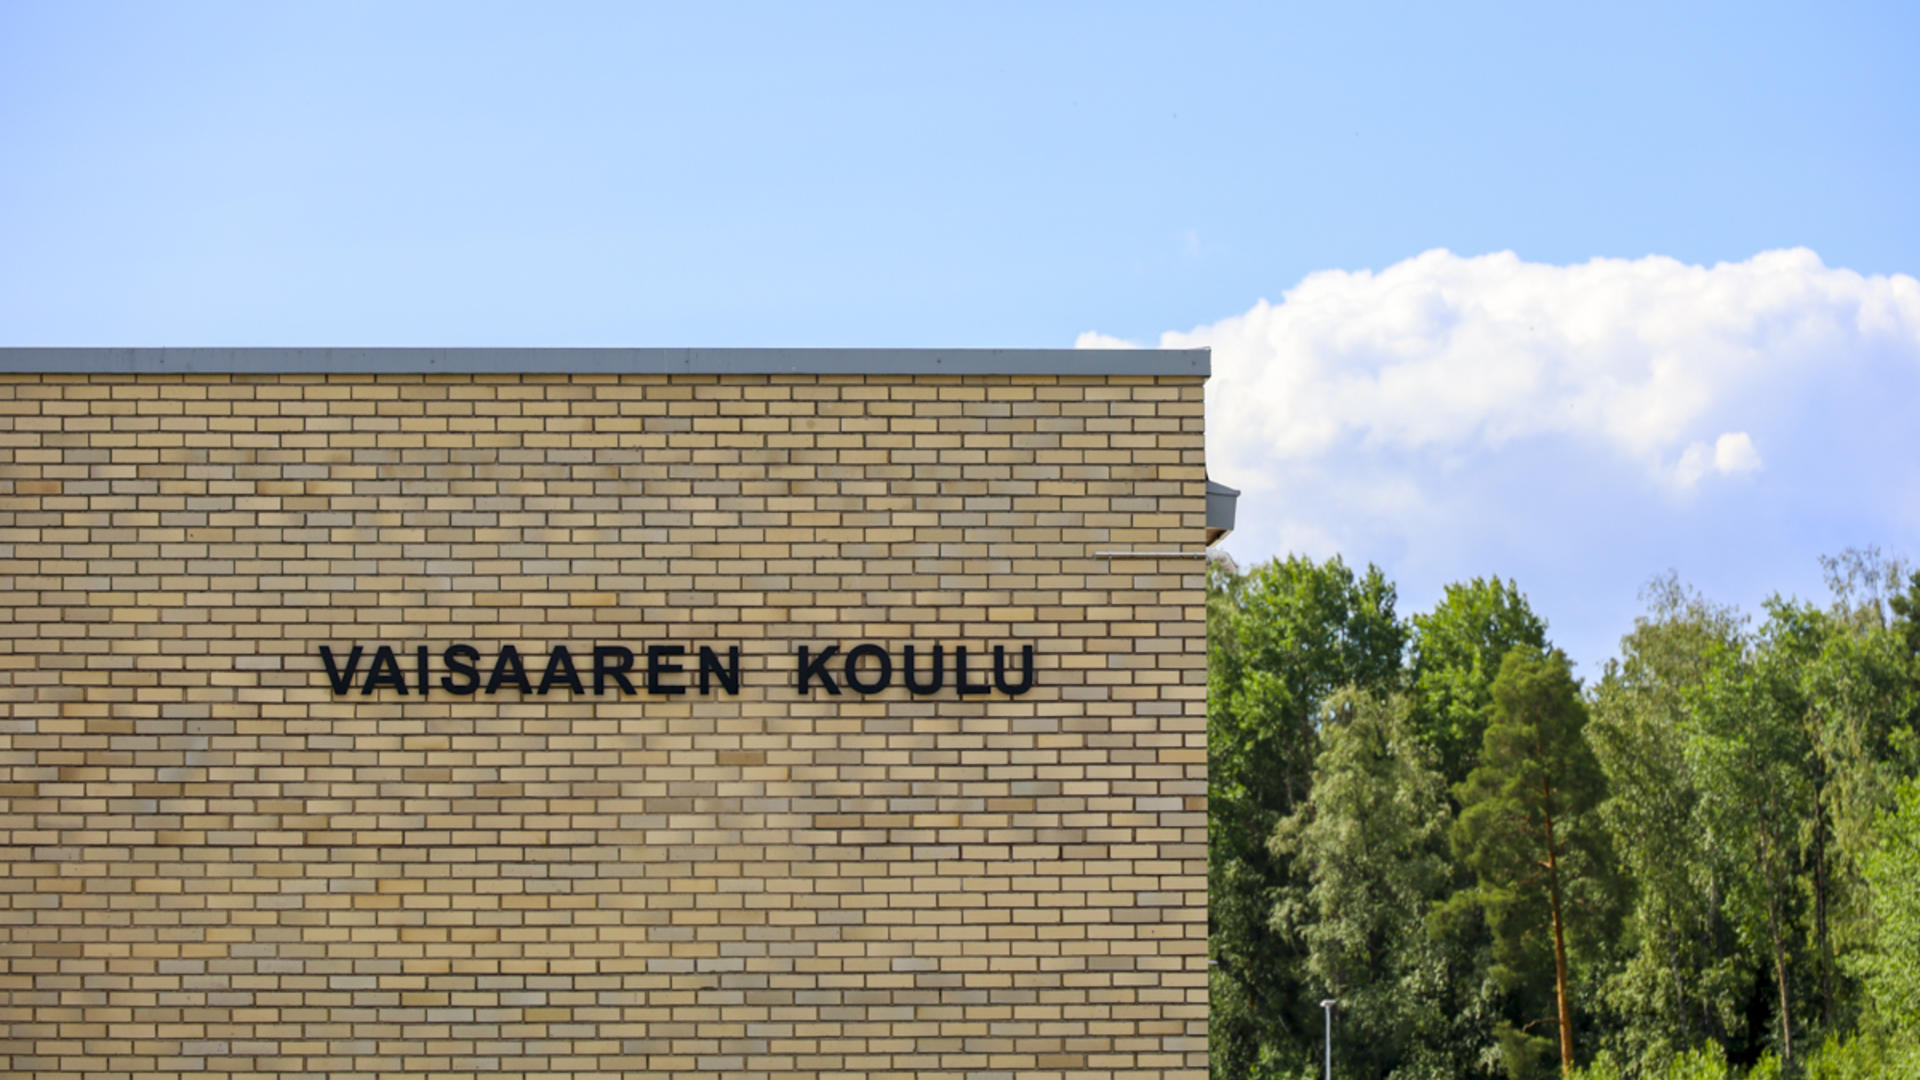 Vaisaaren koulun seinä, jossa teksti Vaisaaren koulu